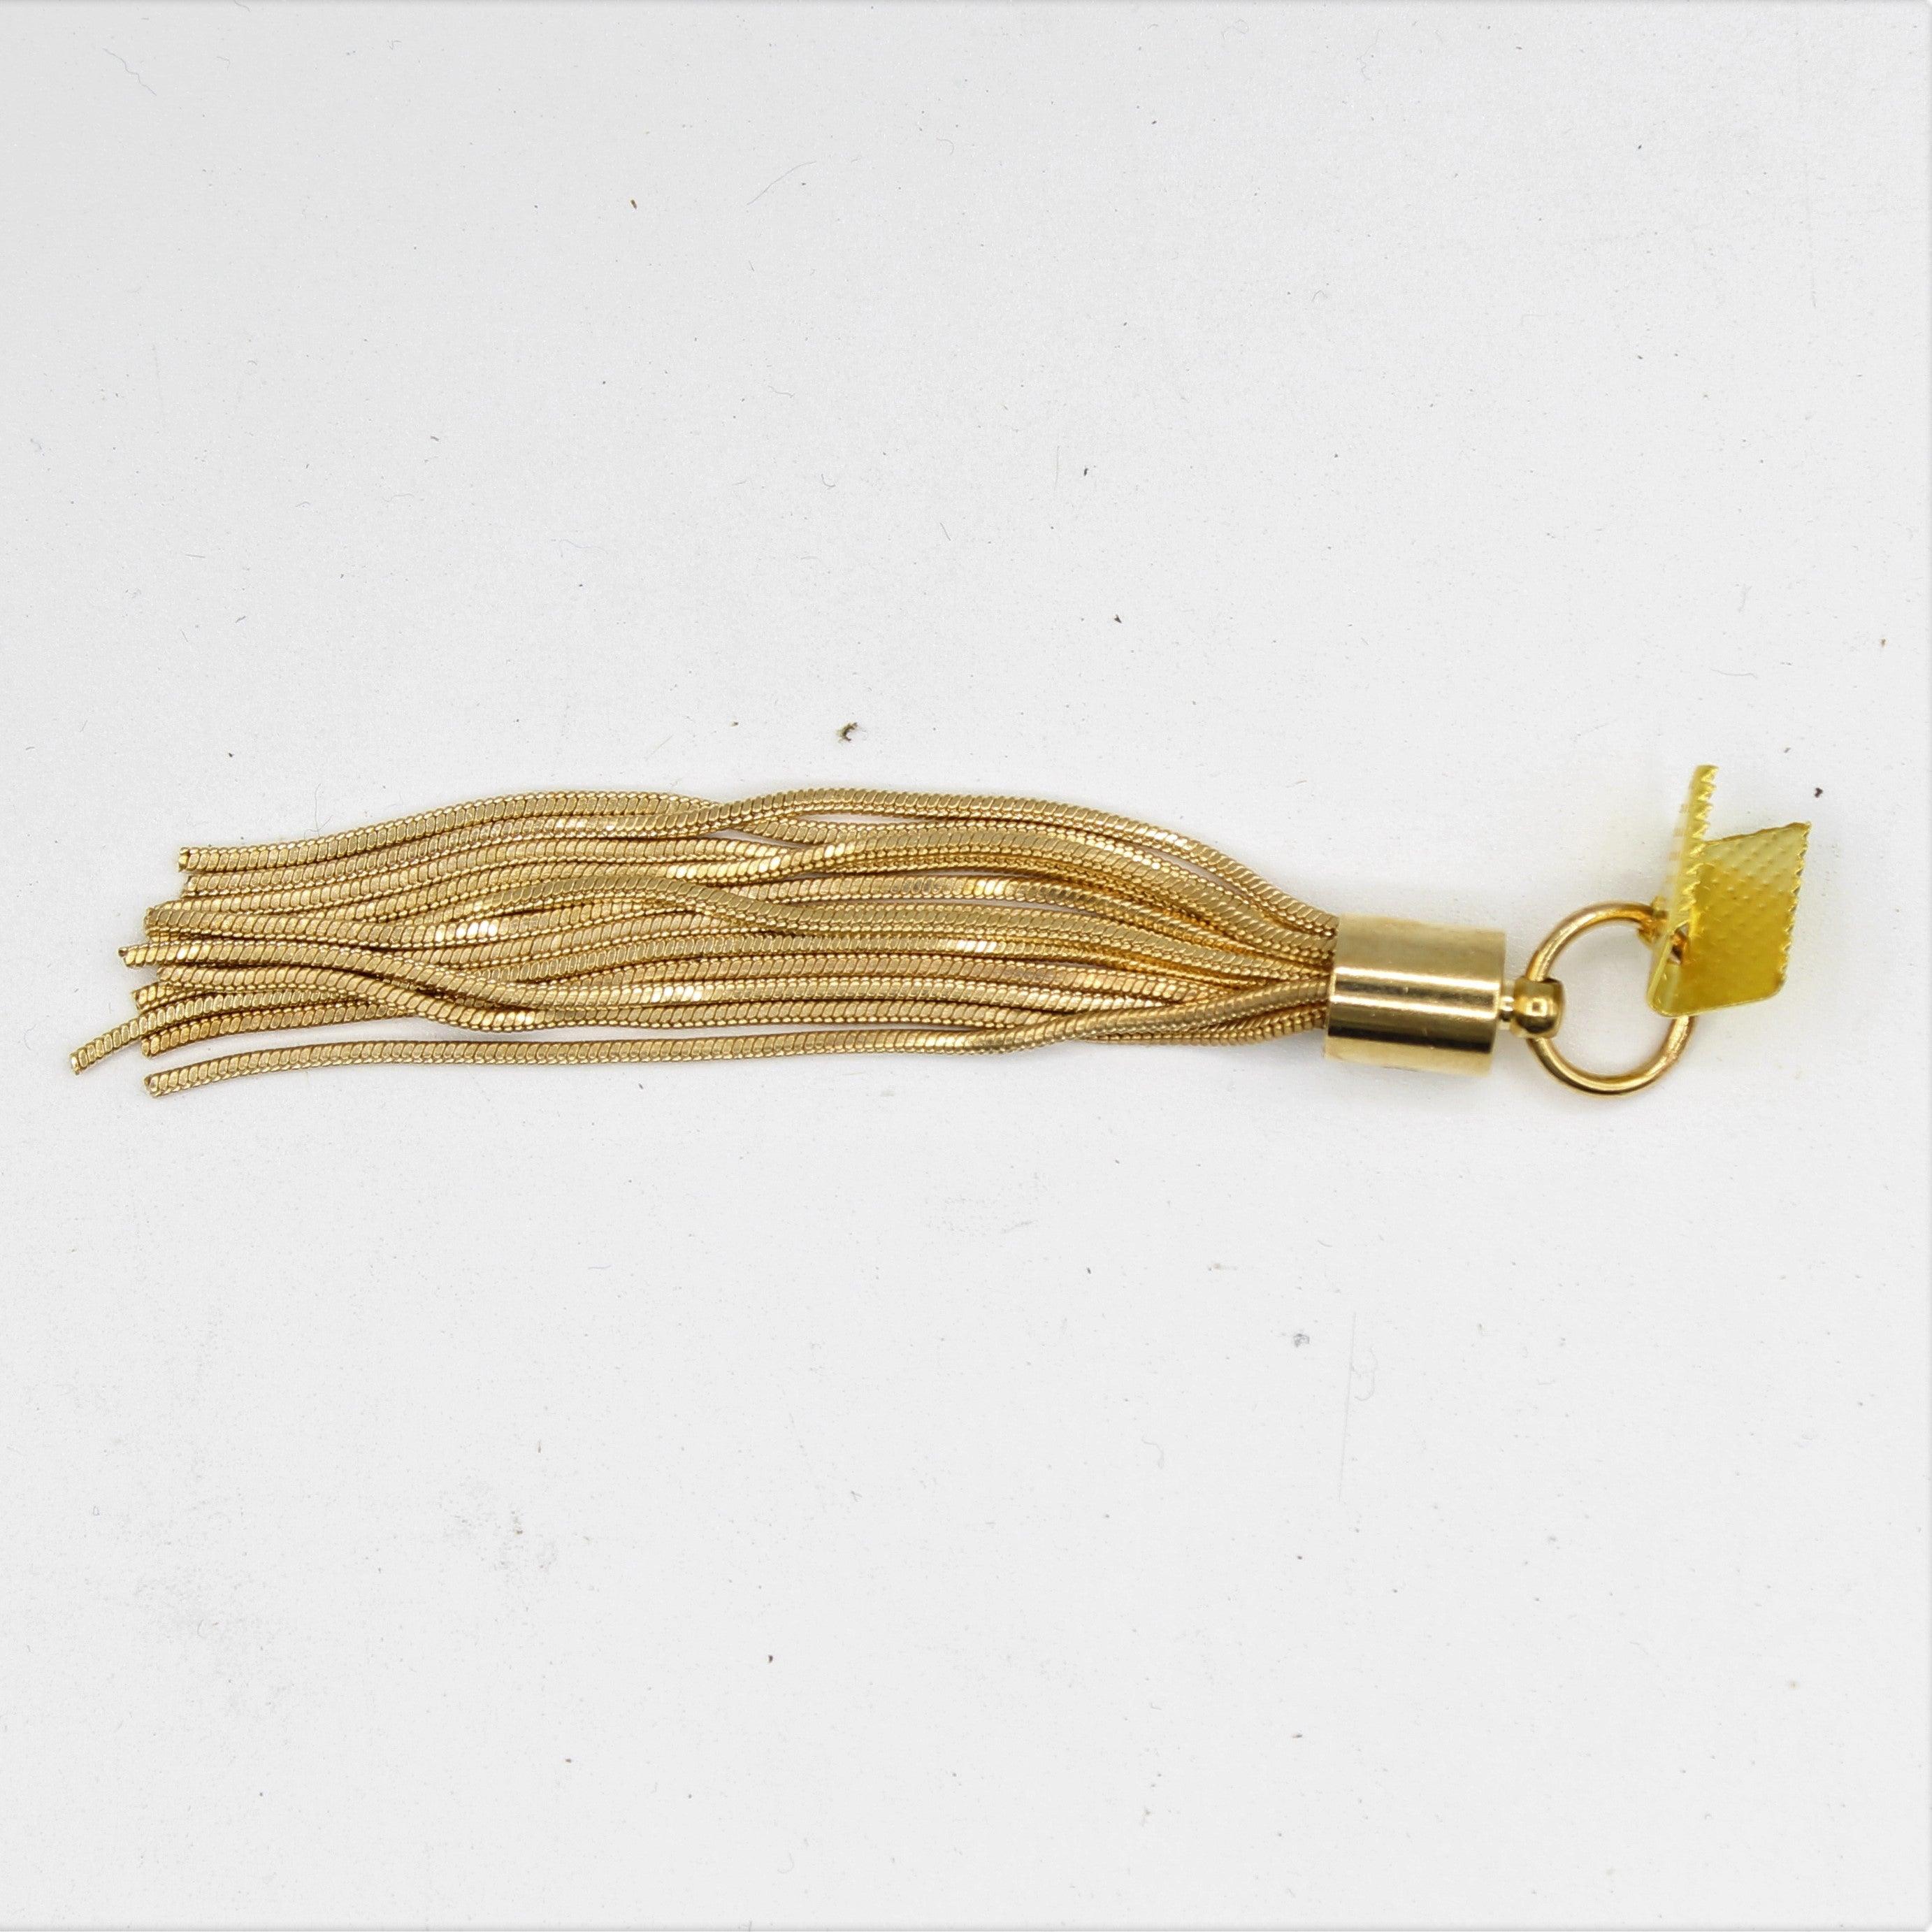 2x Golden Tassel with hook 8x1cm - ACCESSOIRES LEDUC